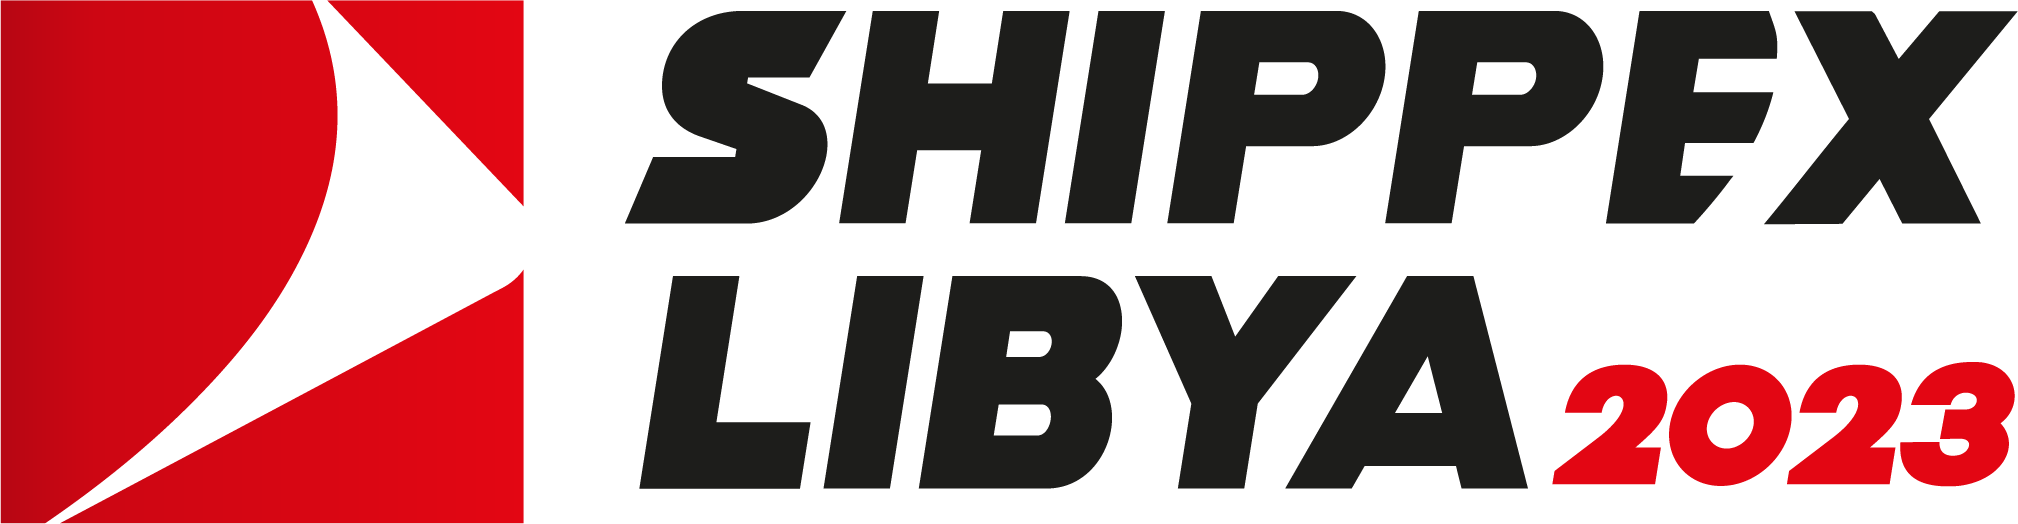 Shippex Libya Expo